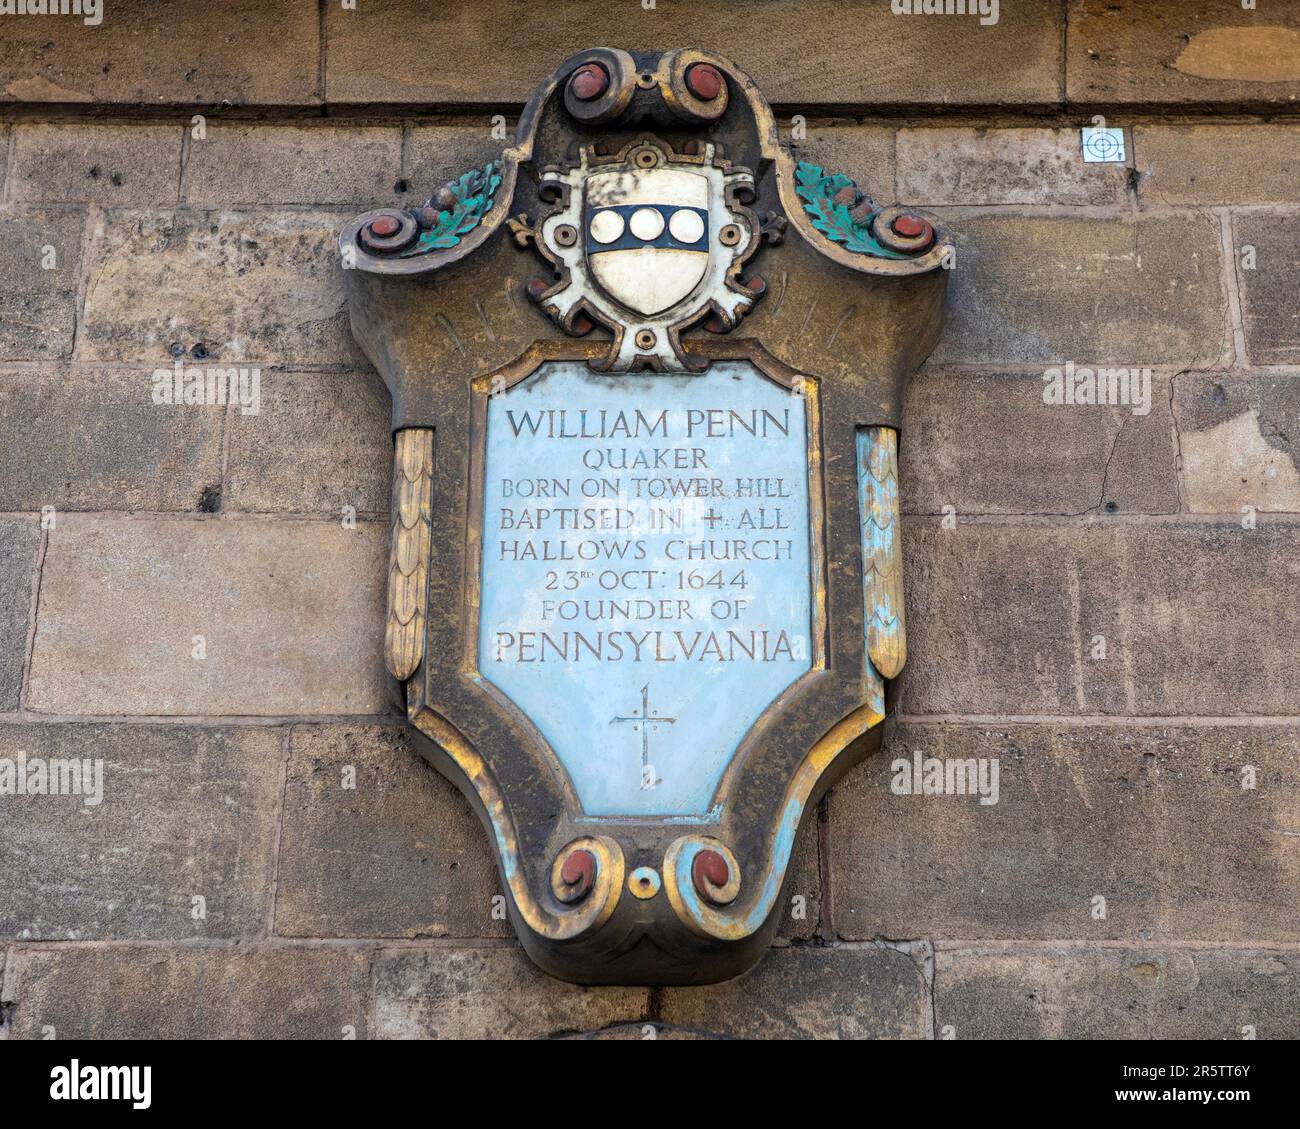 Eine Plakette an der Außenseite von All Hallows an der Tower Church in London, Großbritannien, gewidmet William Penn - Quaker und Gründer von Pennsylvania, der bap war Stockfoto